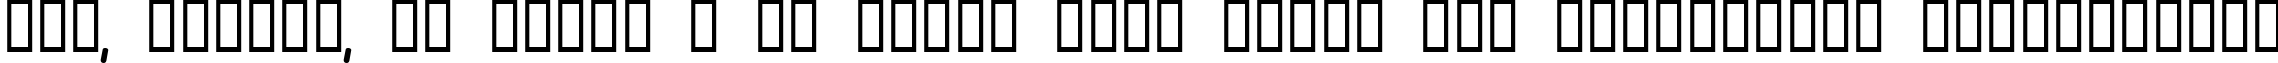 Пример написания шрифтом Olympus Bold текста на украинском